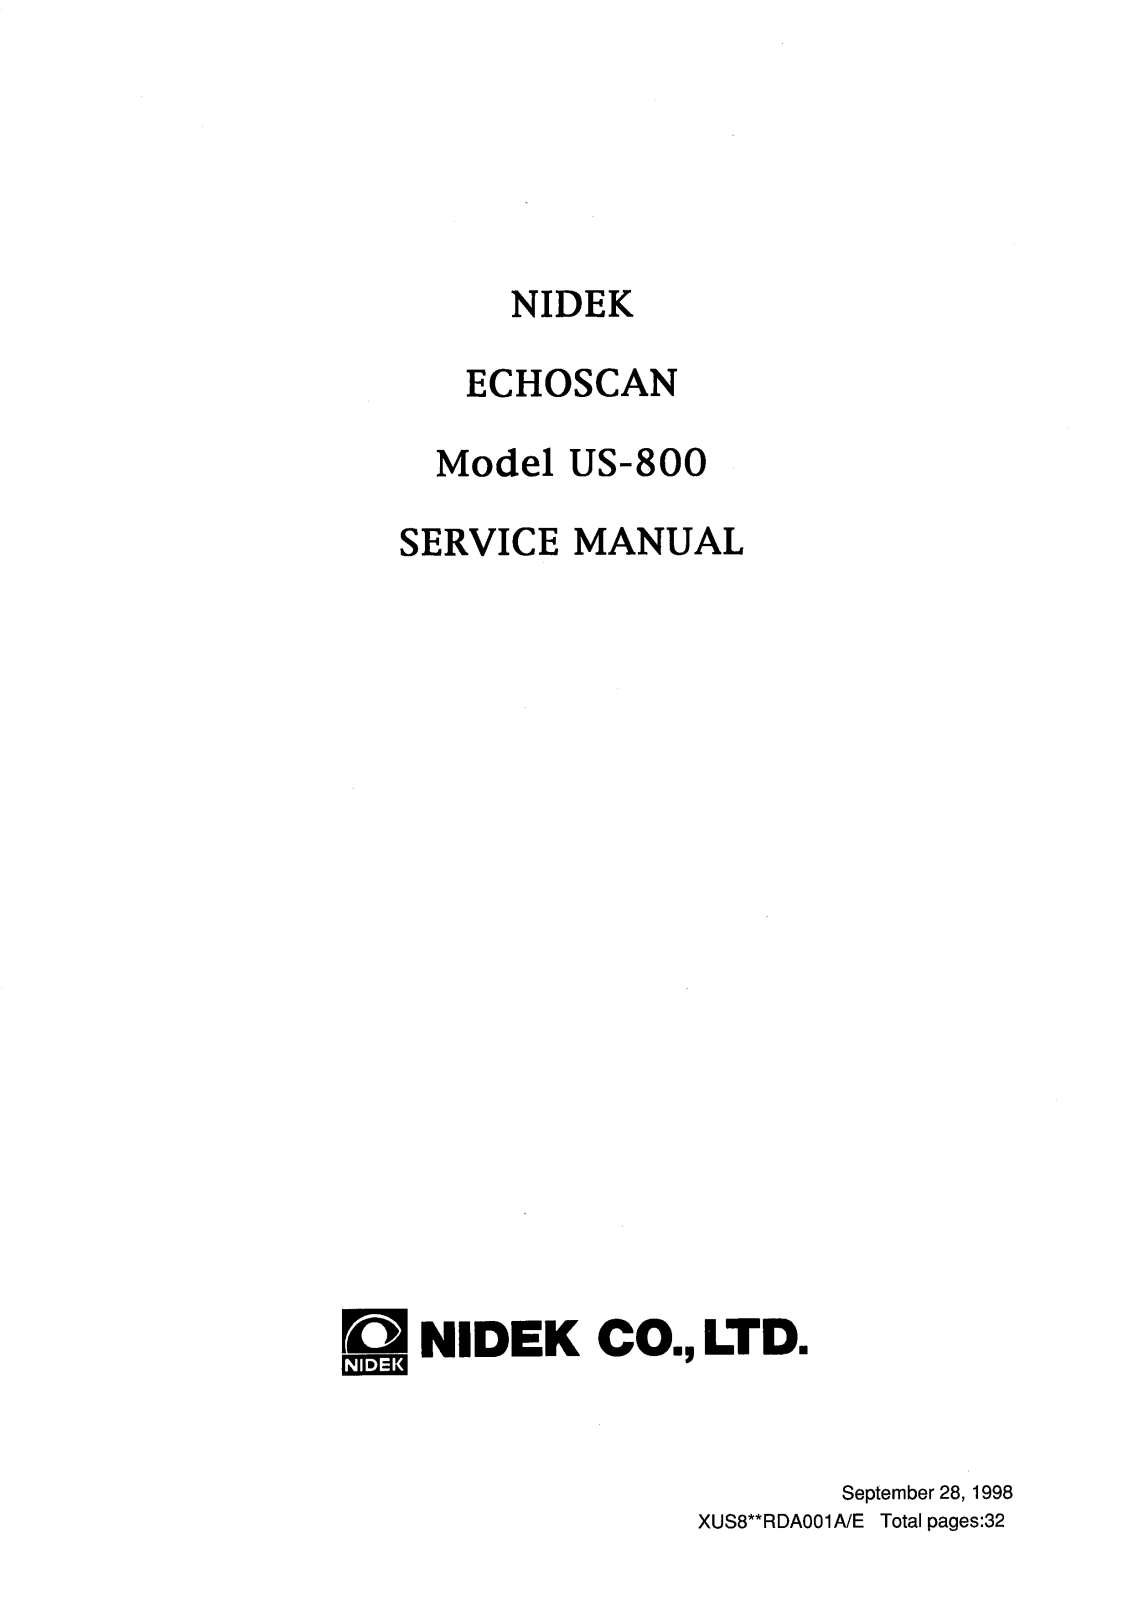 Nidek US-800 Service manual